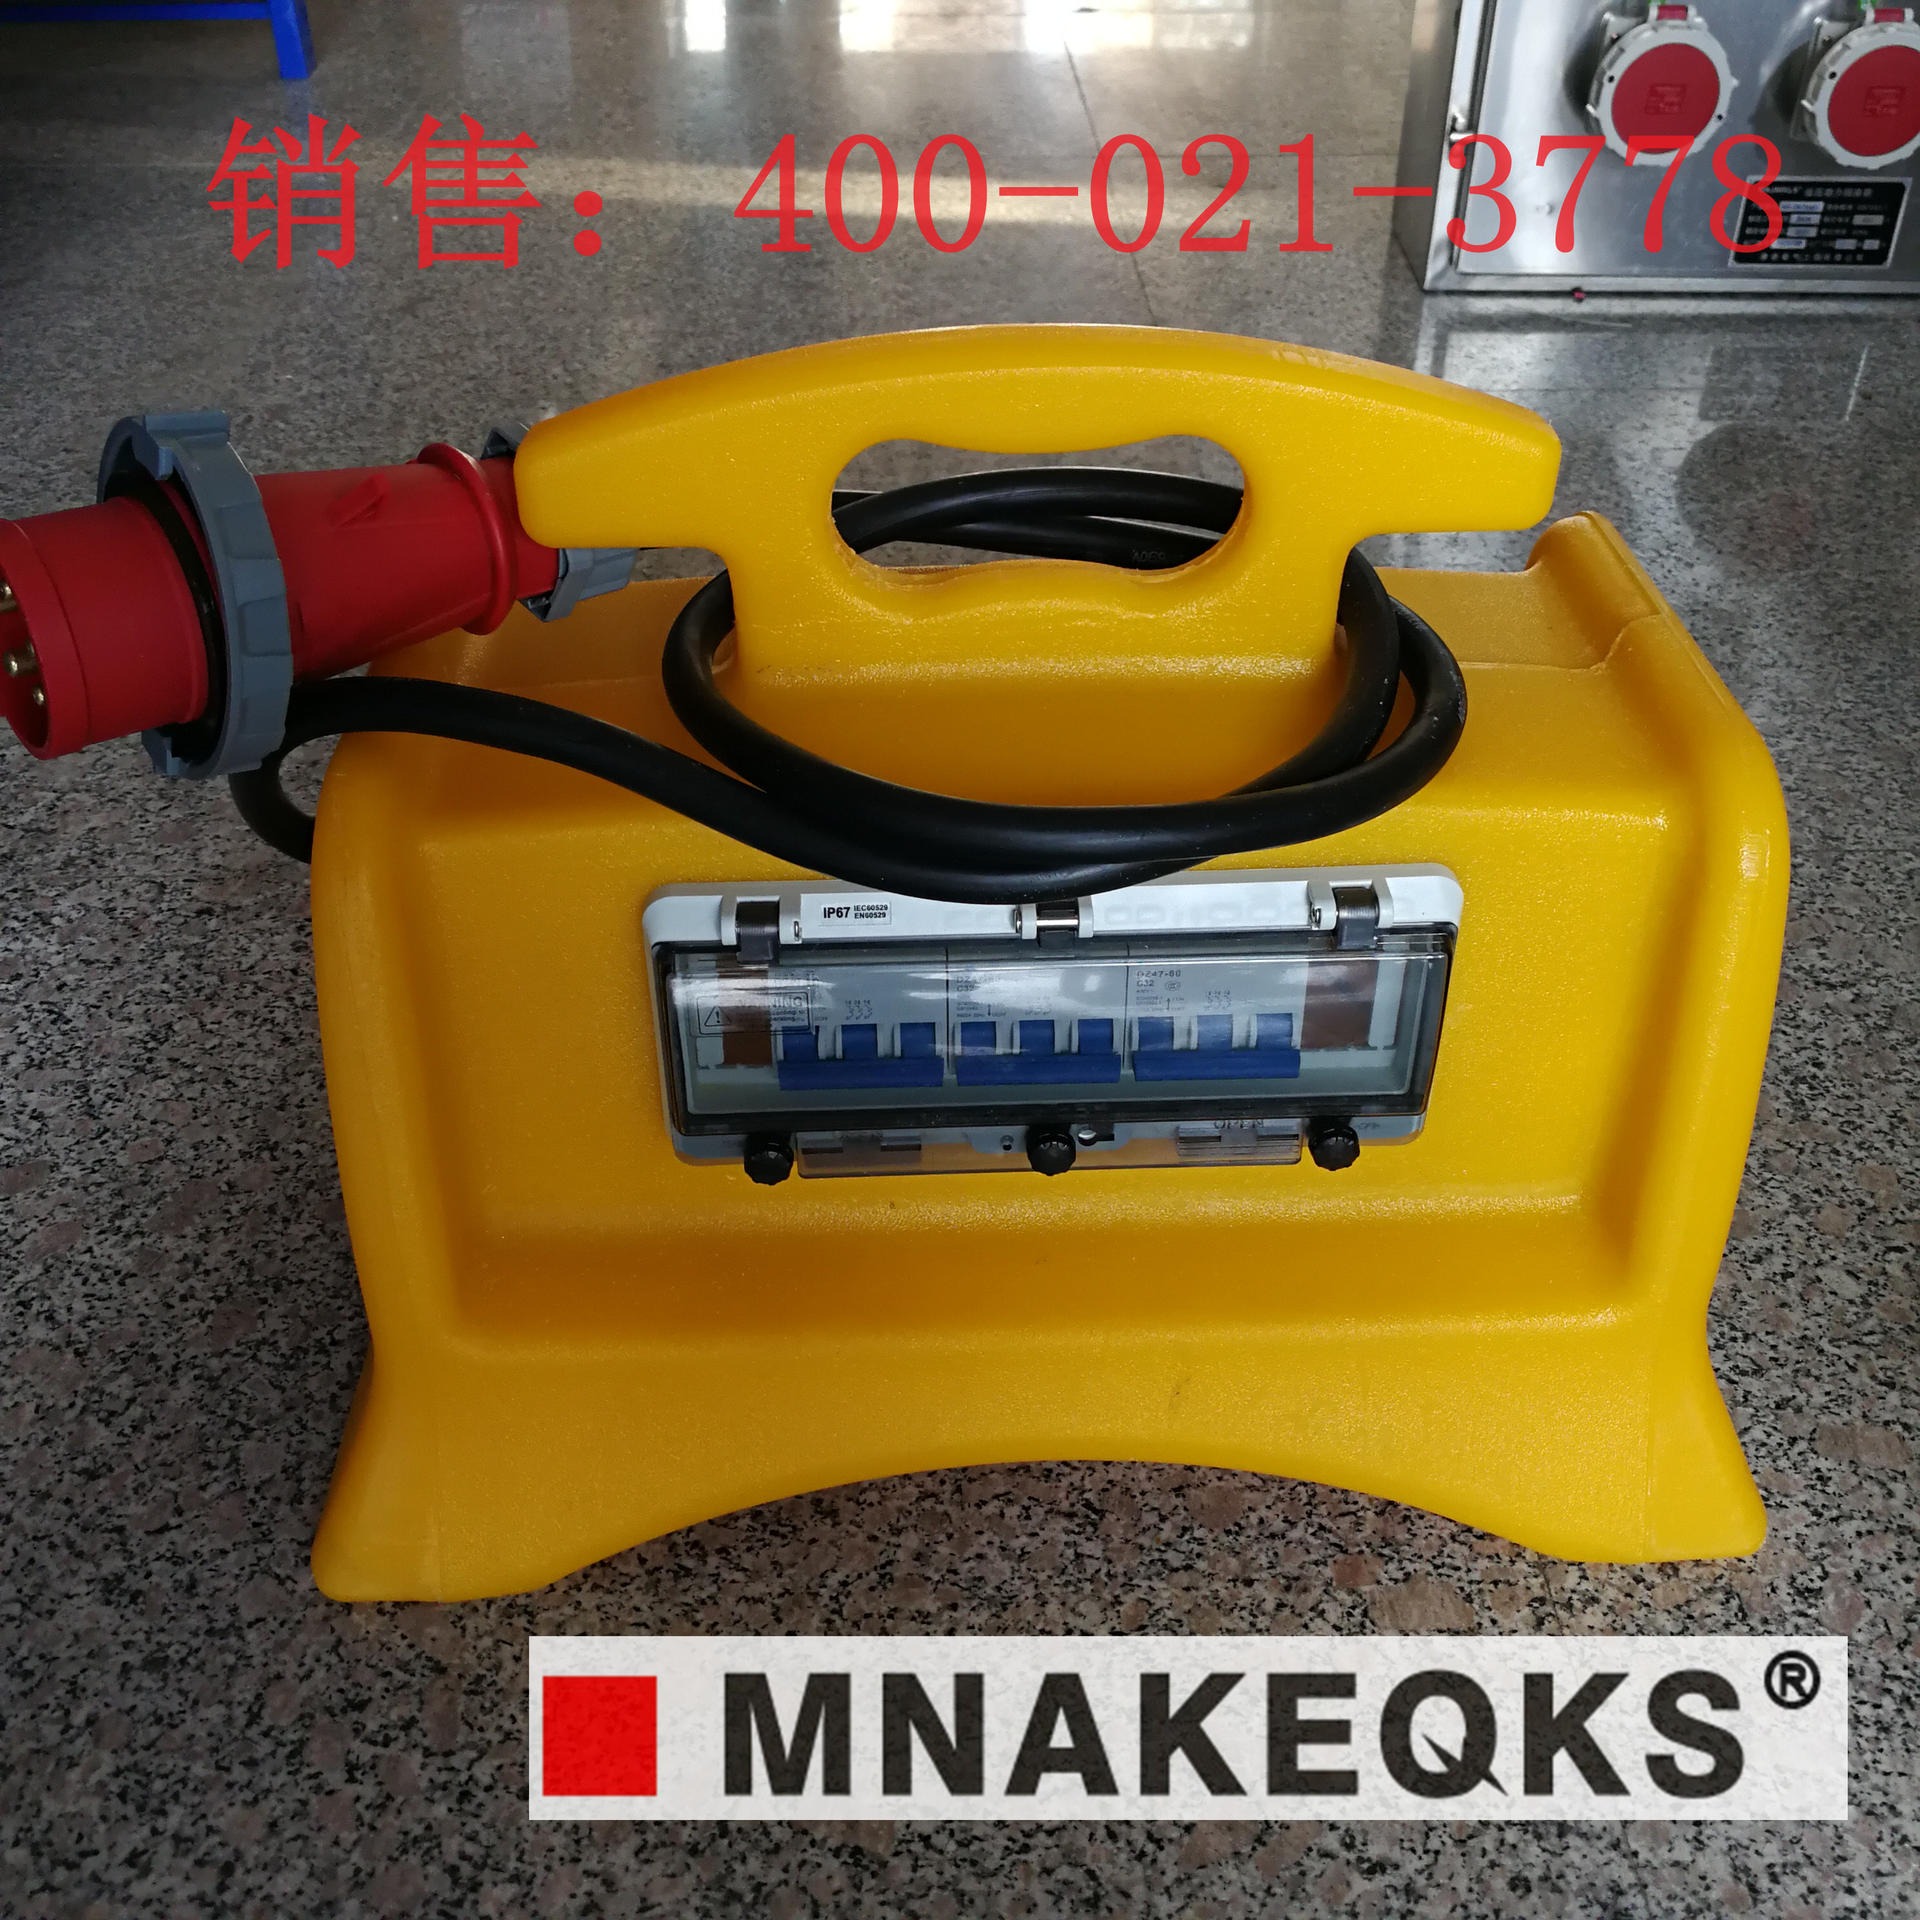 防水插座箱MNAKEQKS便携式电源检修箱移动式插座箱